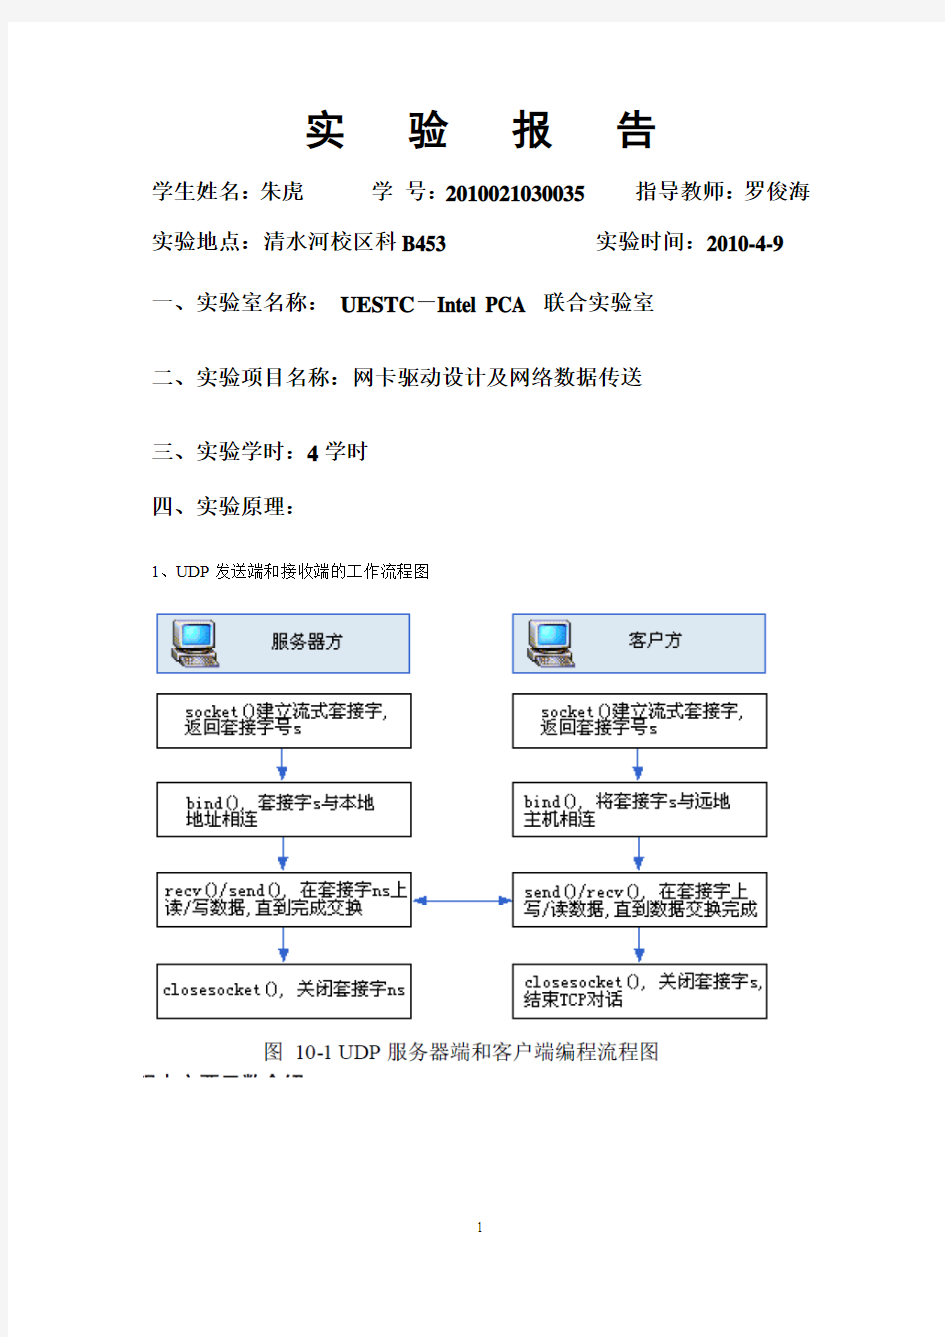 标准实验报告格式 (3) 网卡驱动设计及网络数据传送